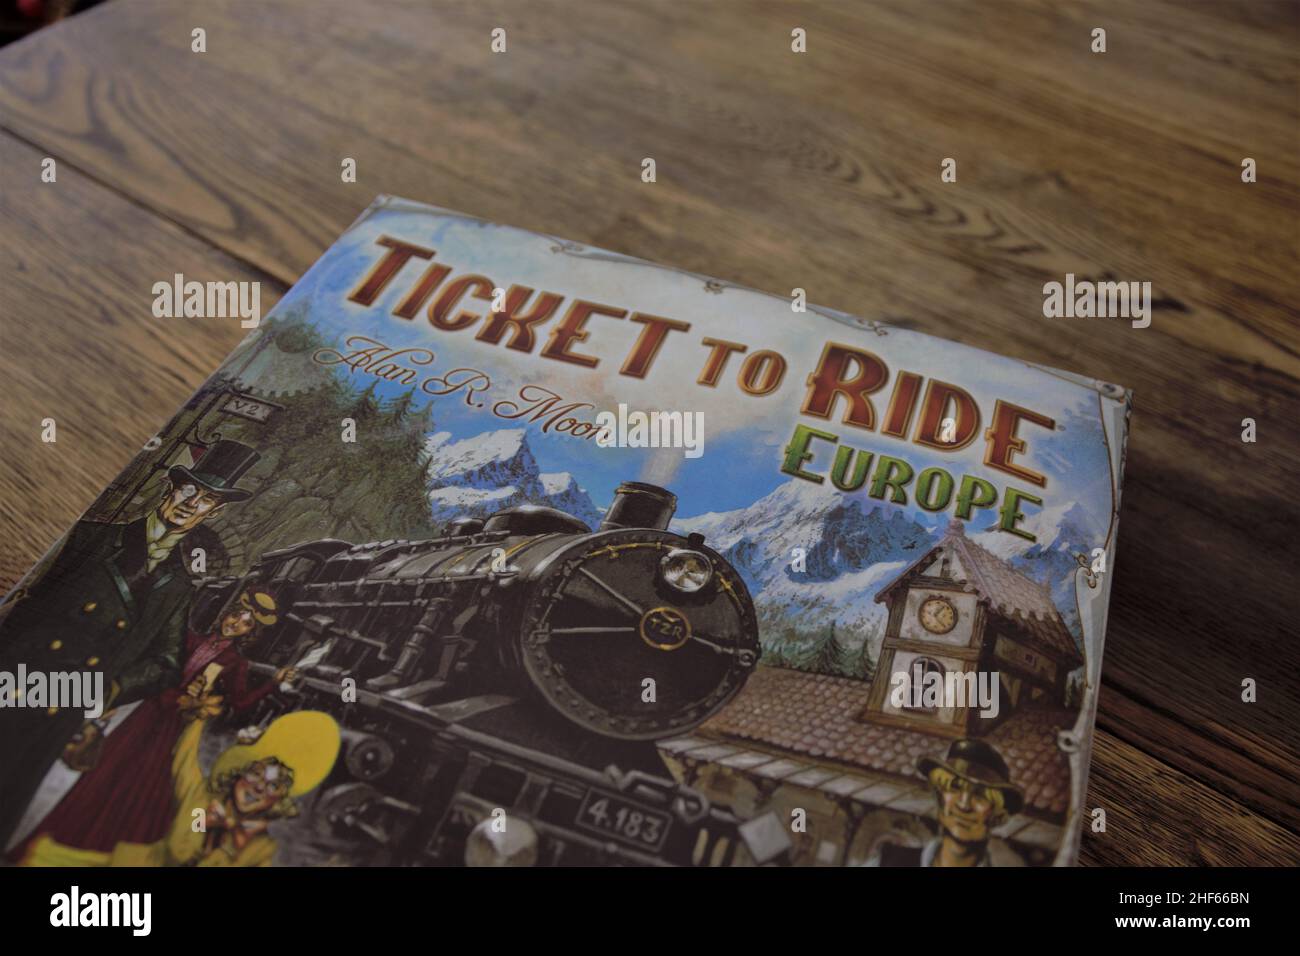 Entrada para Ride Europe. Un juego de mesa de temática ferroviaria en el que los juegos construyen rutas para conectar las ciudades. El juego de diversión familiar ha ganado múltiples premios. Foto de stock